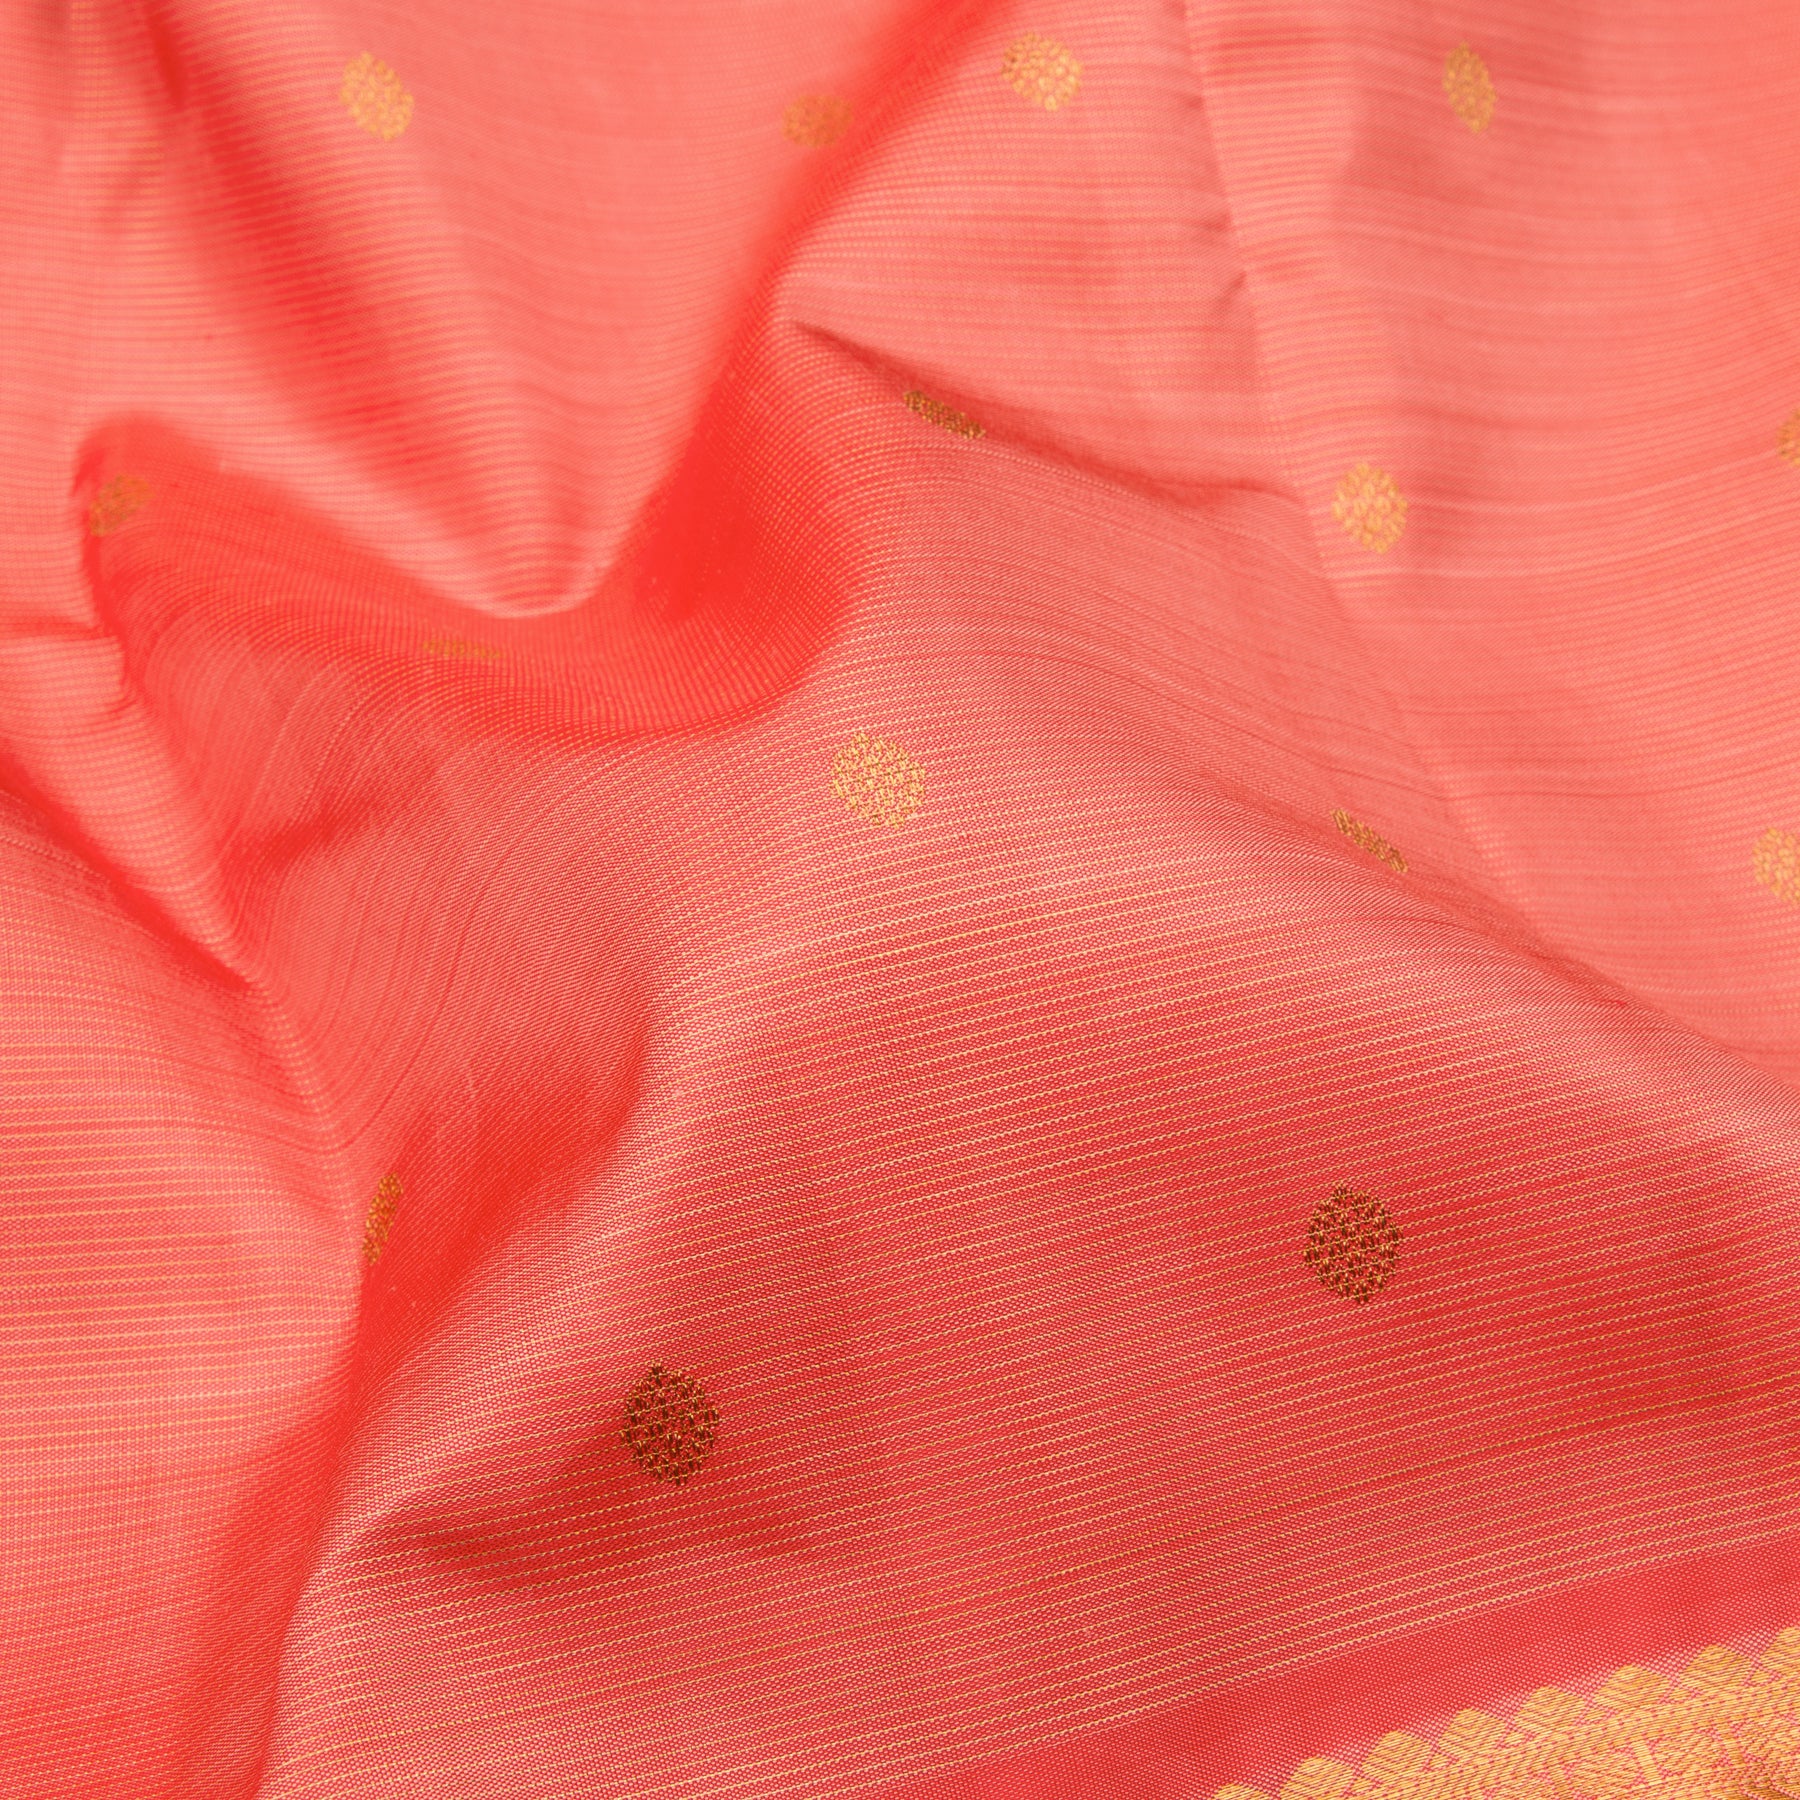 Kanakavalli Kanjivaram Silk Sari 23-110-HS001-10408 - Fabric View